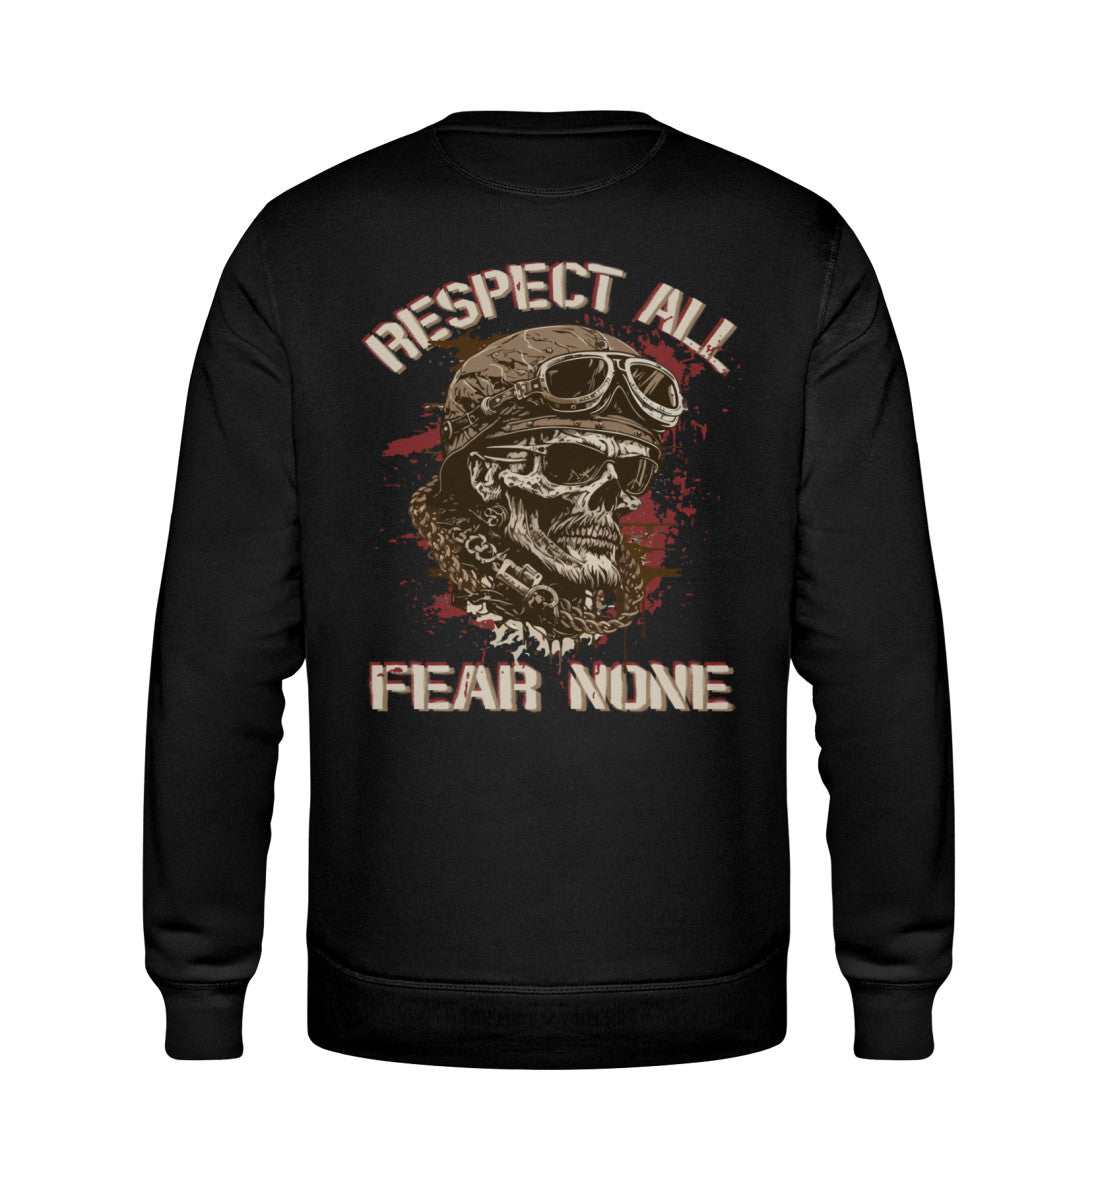 Ein Biker Sweatshirt für Motorradfahrer von Wingbikers mit dem Aufdruck, Respect All - Fear None, in schwarz.